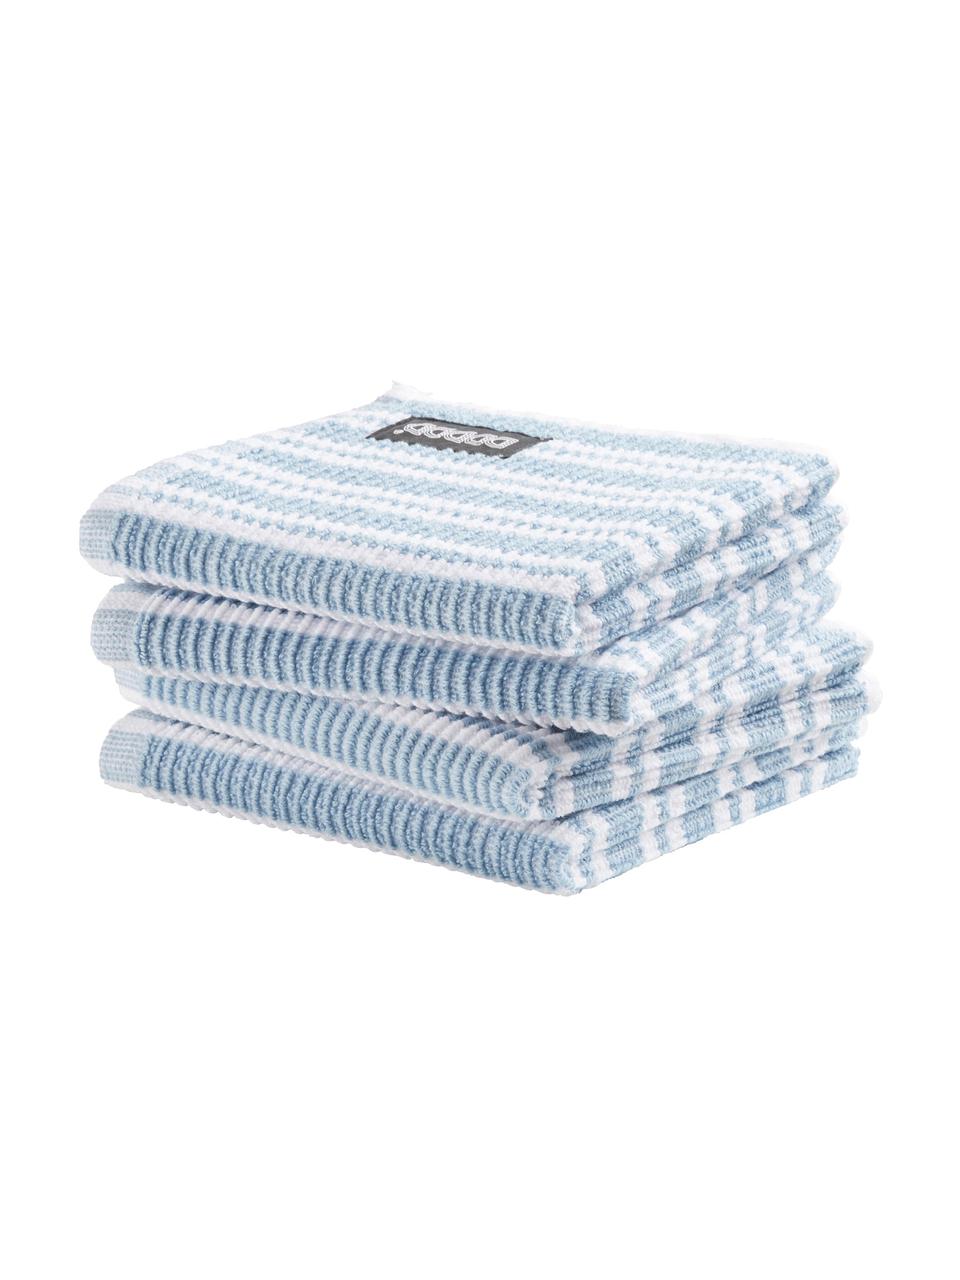 Reinigungstücher Basic Clean, 4 Stück, Baumwolle, Blau, Weiss, B 30 x L 30 cm